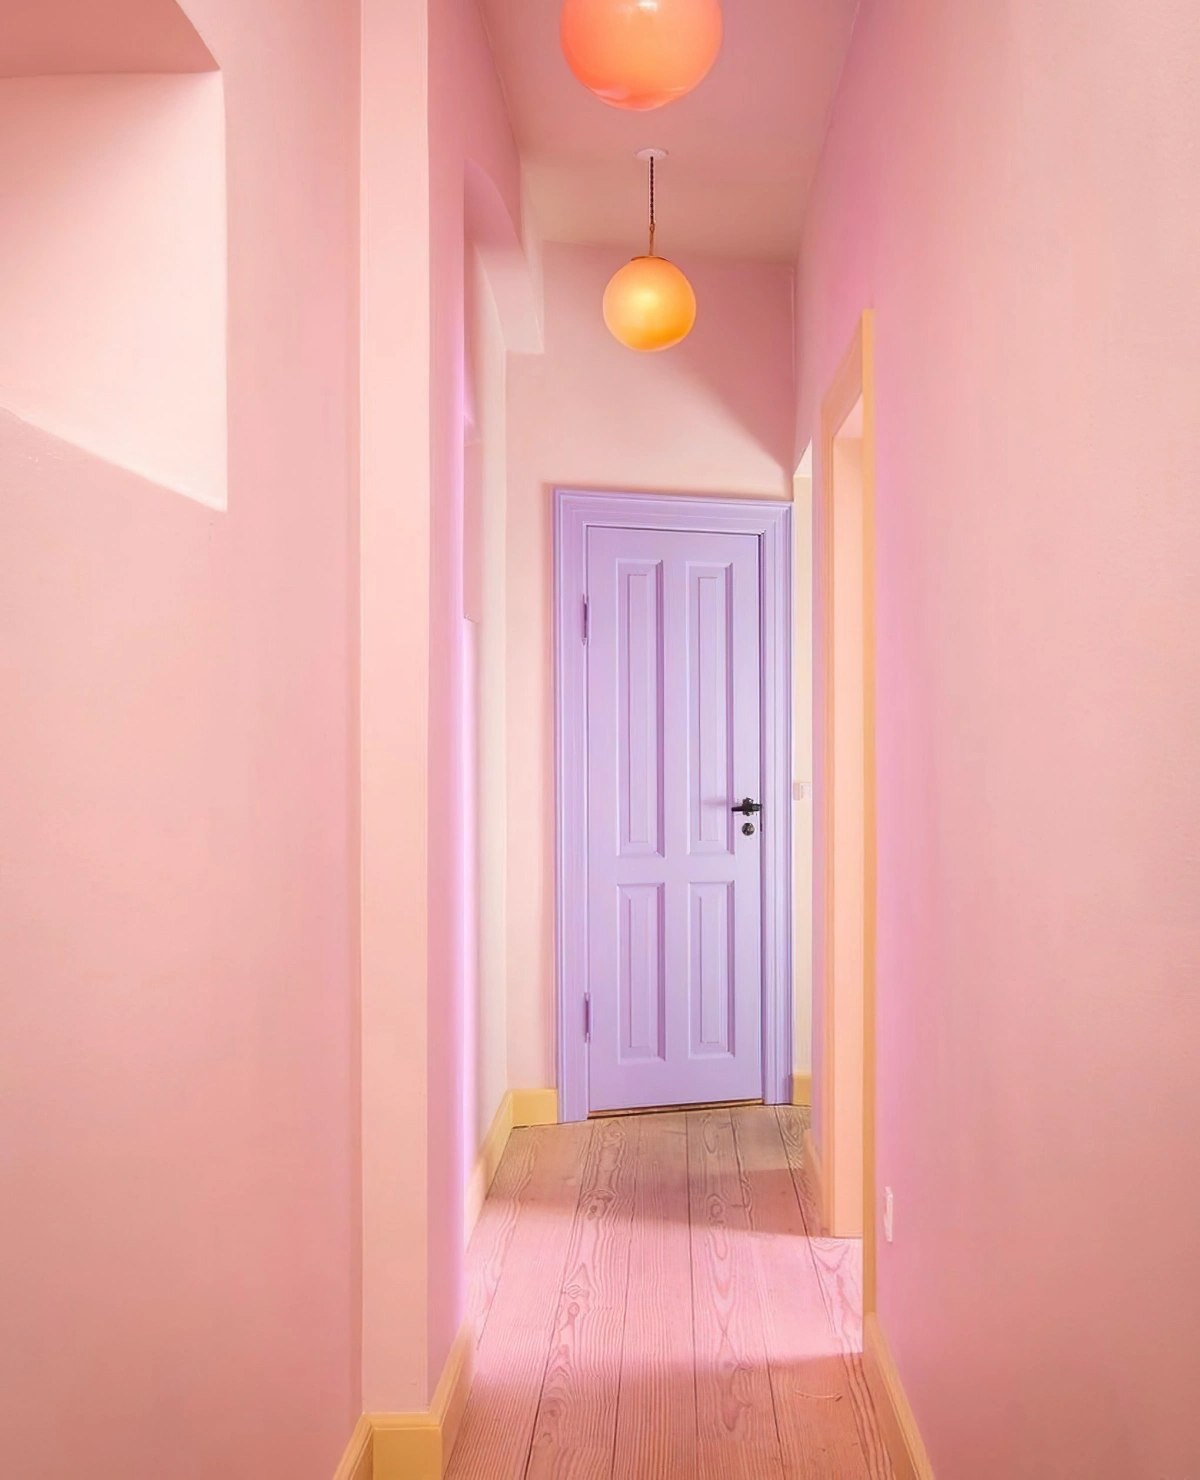 murs rose pastel deco couloir etroit peinture porte lavande